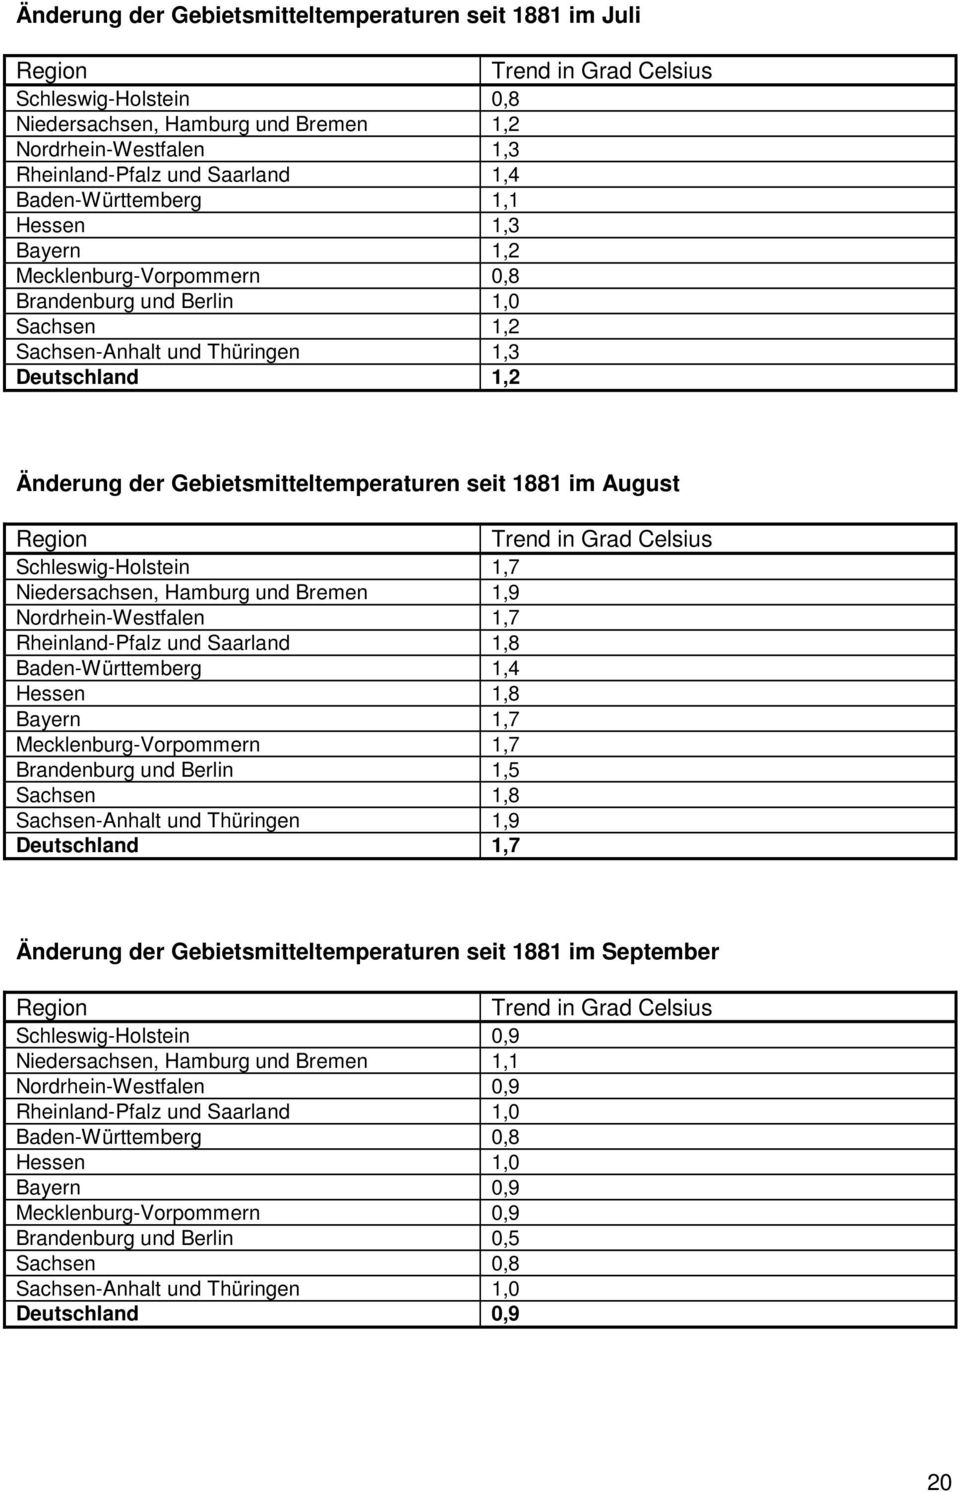 seit 1881 im August Trend in Grad Celsius Schleswig-Holstein 1,7 Niedersachsen, Hamburg und Bremen 1,9 Nordrhein-Westfalen 1,7 Rheinland-Pfalz und Saarland 1,8 Baden-Württemberg 1,4 Hessen 1,8 Bayern